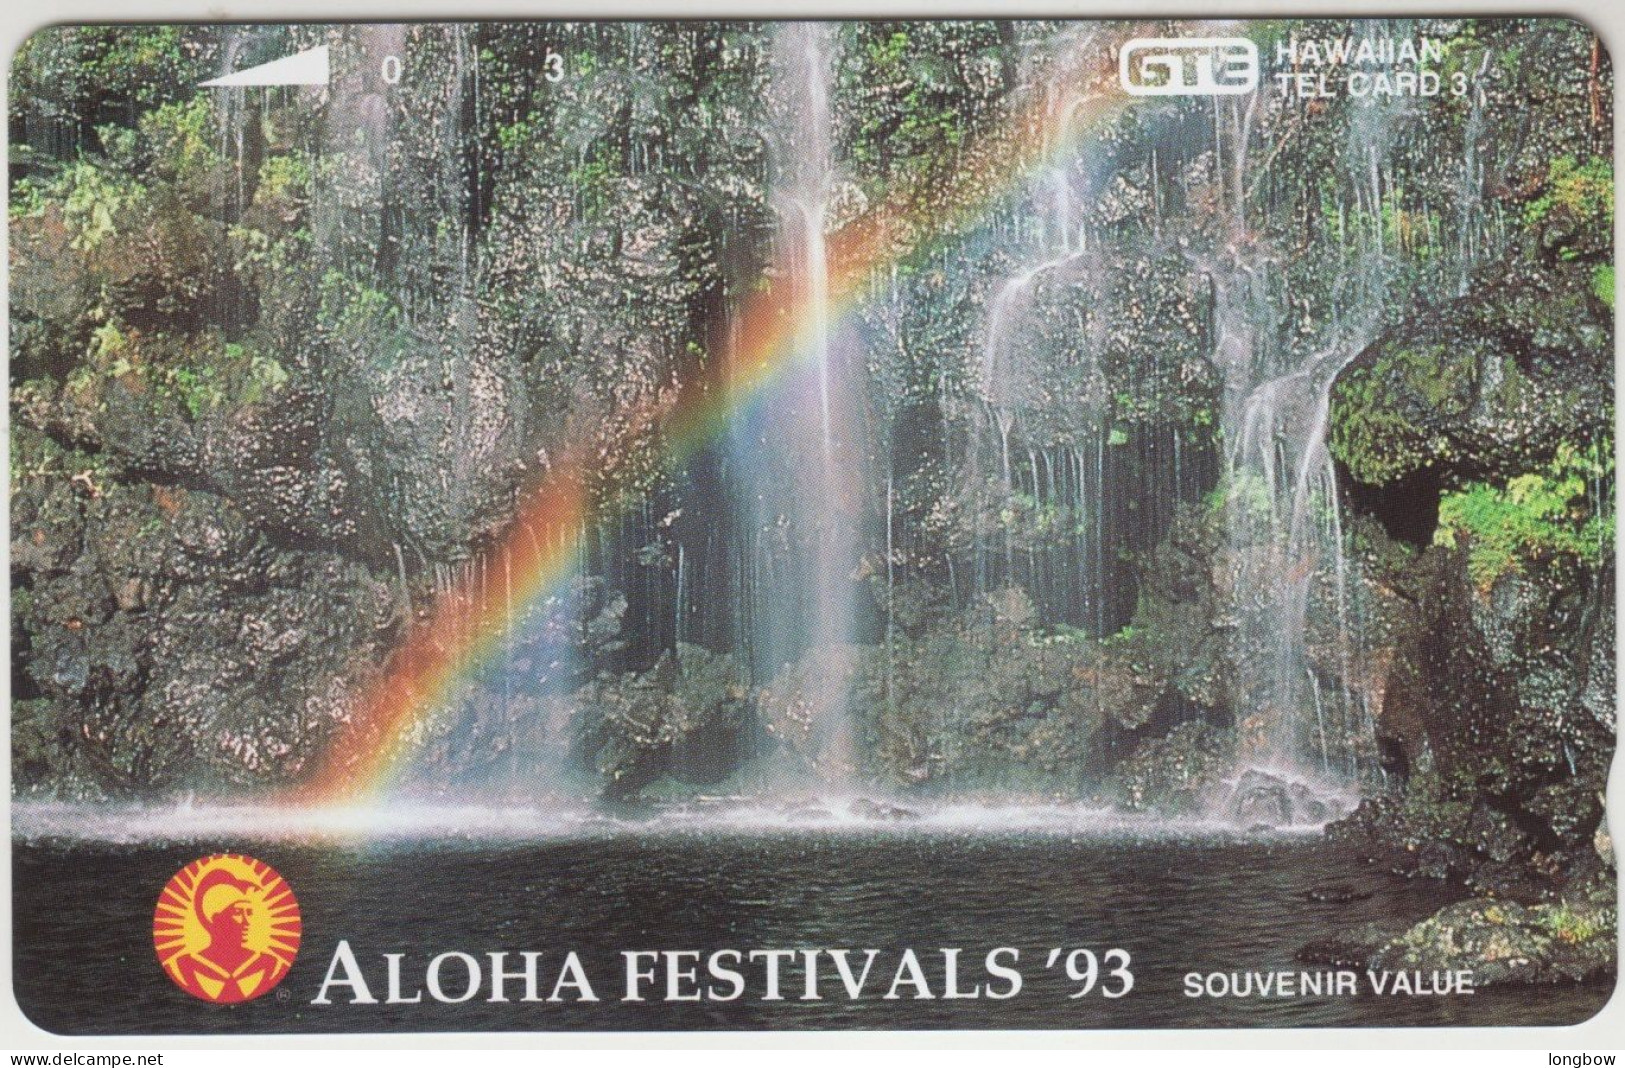 Hawaii N°38 - 1993 - Aloha Festival Rainbow Falls 2.500ex. Mint - Hawaï